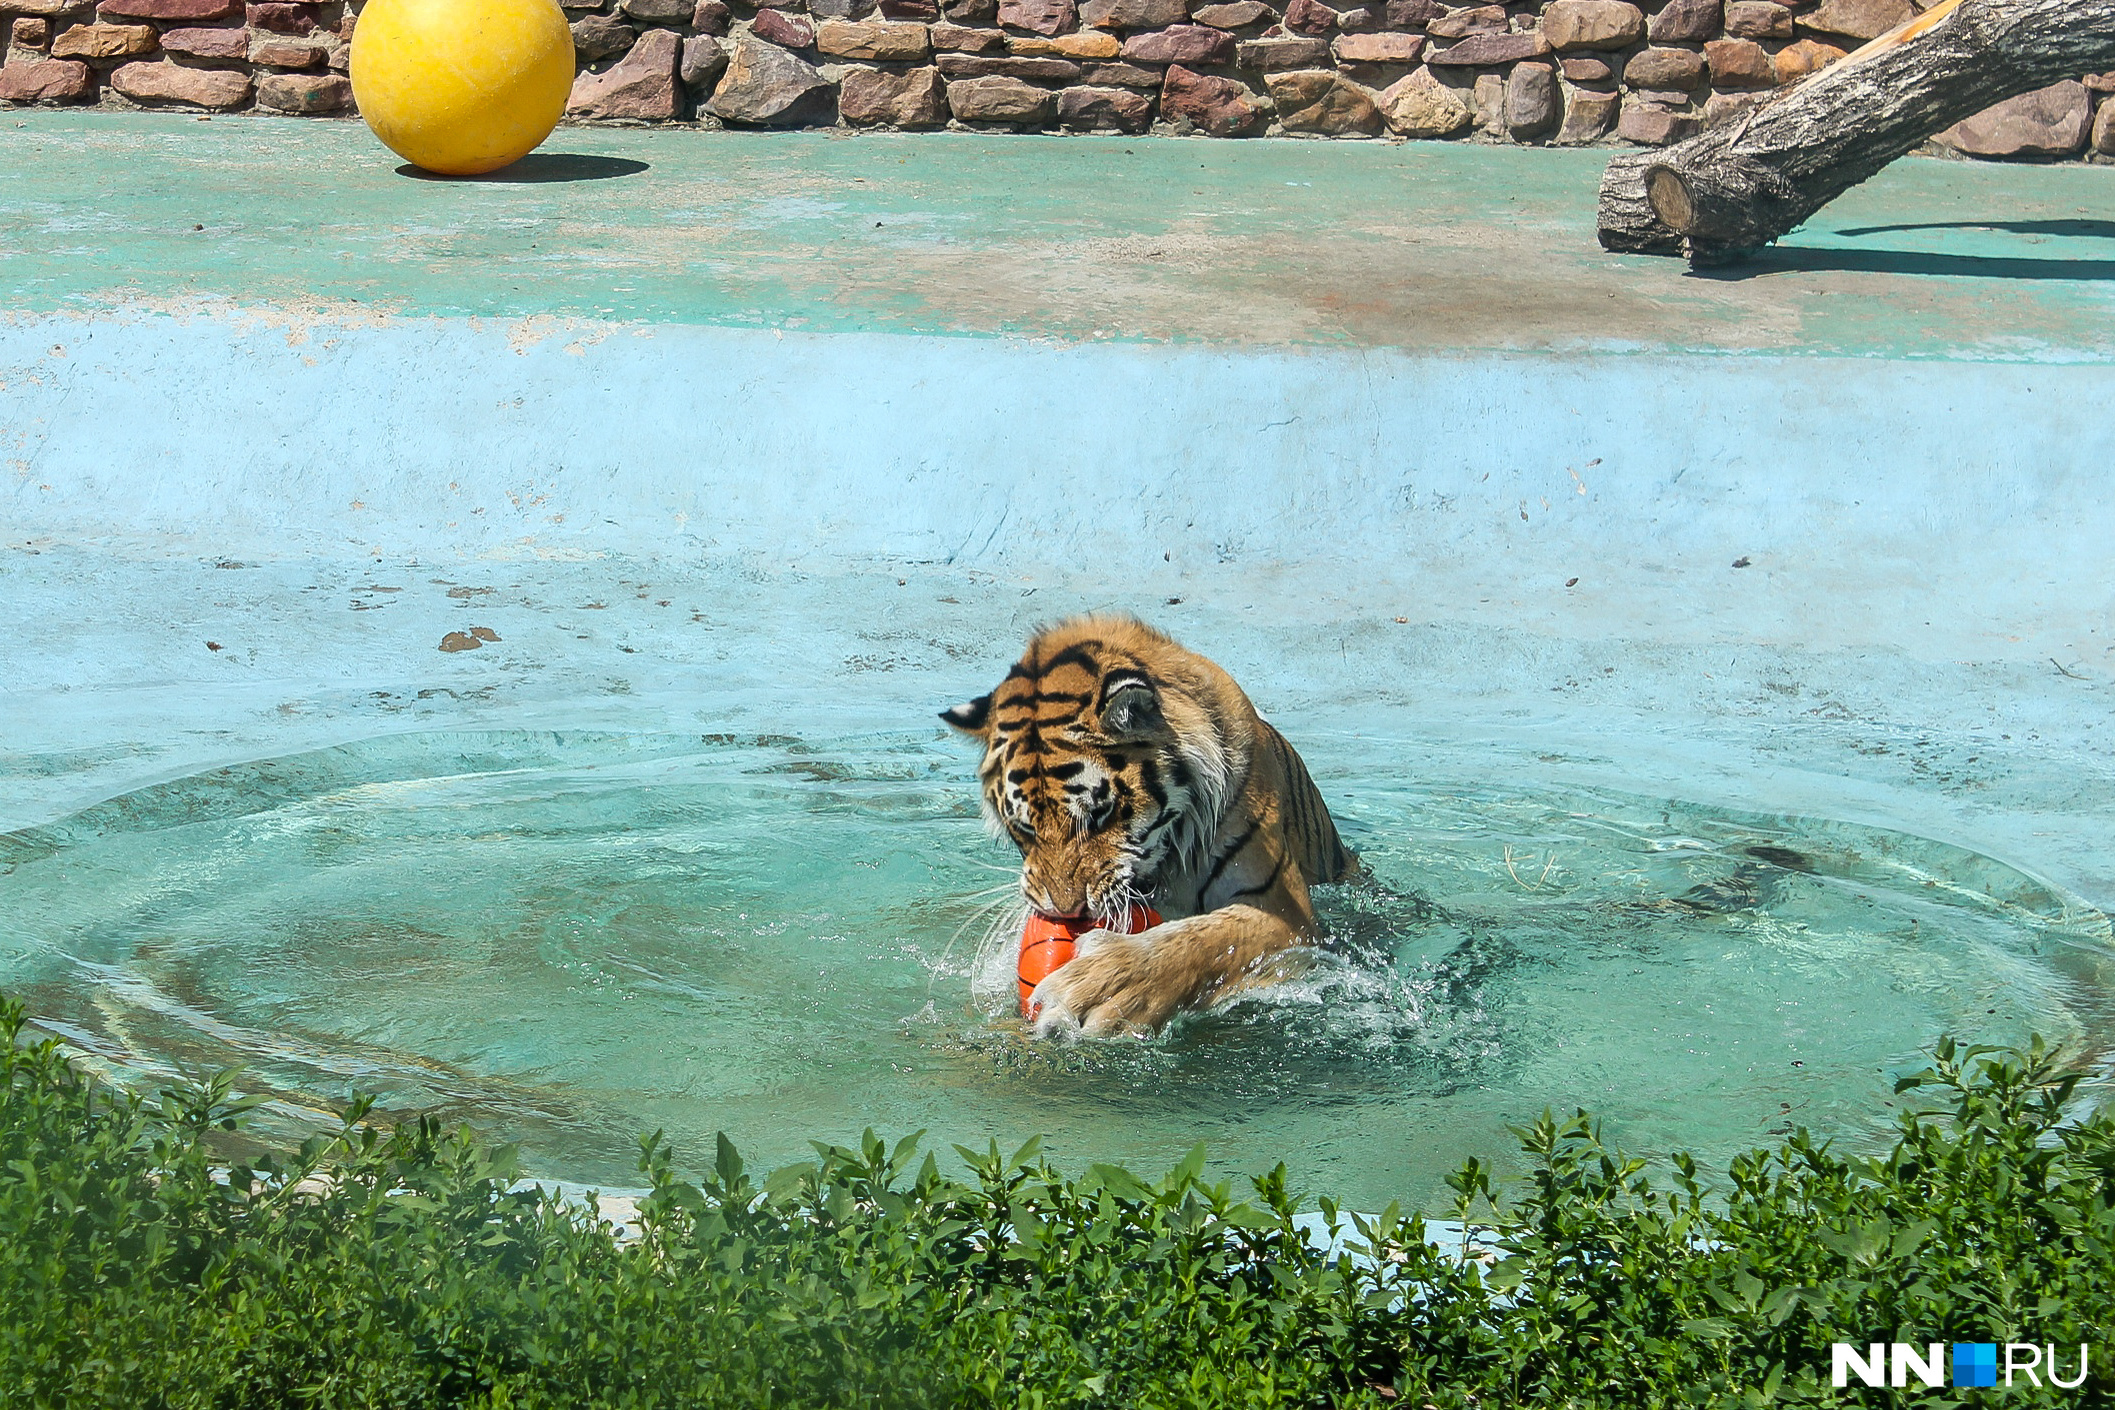 Еще одним подарком для Амуры стали мячи, которые тут же привлекли внимание тигров и стали объектами для нападения<br><br>